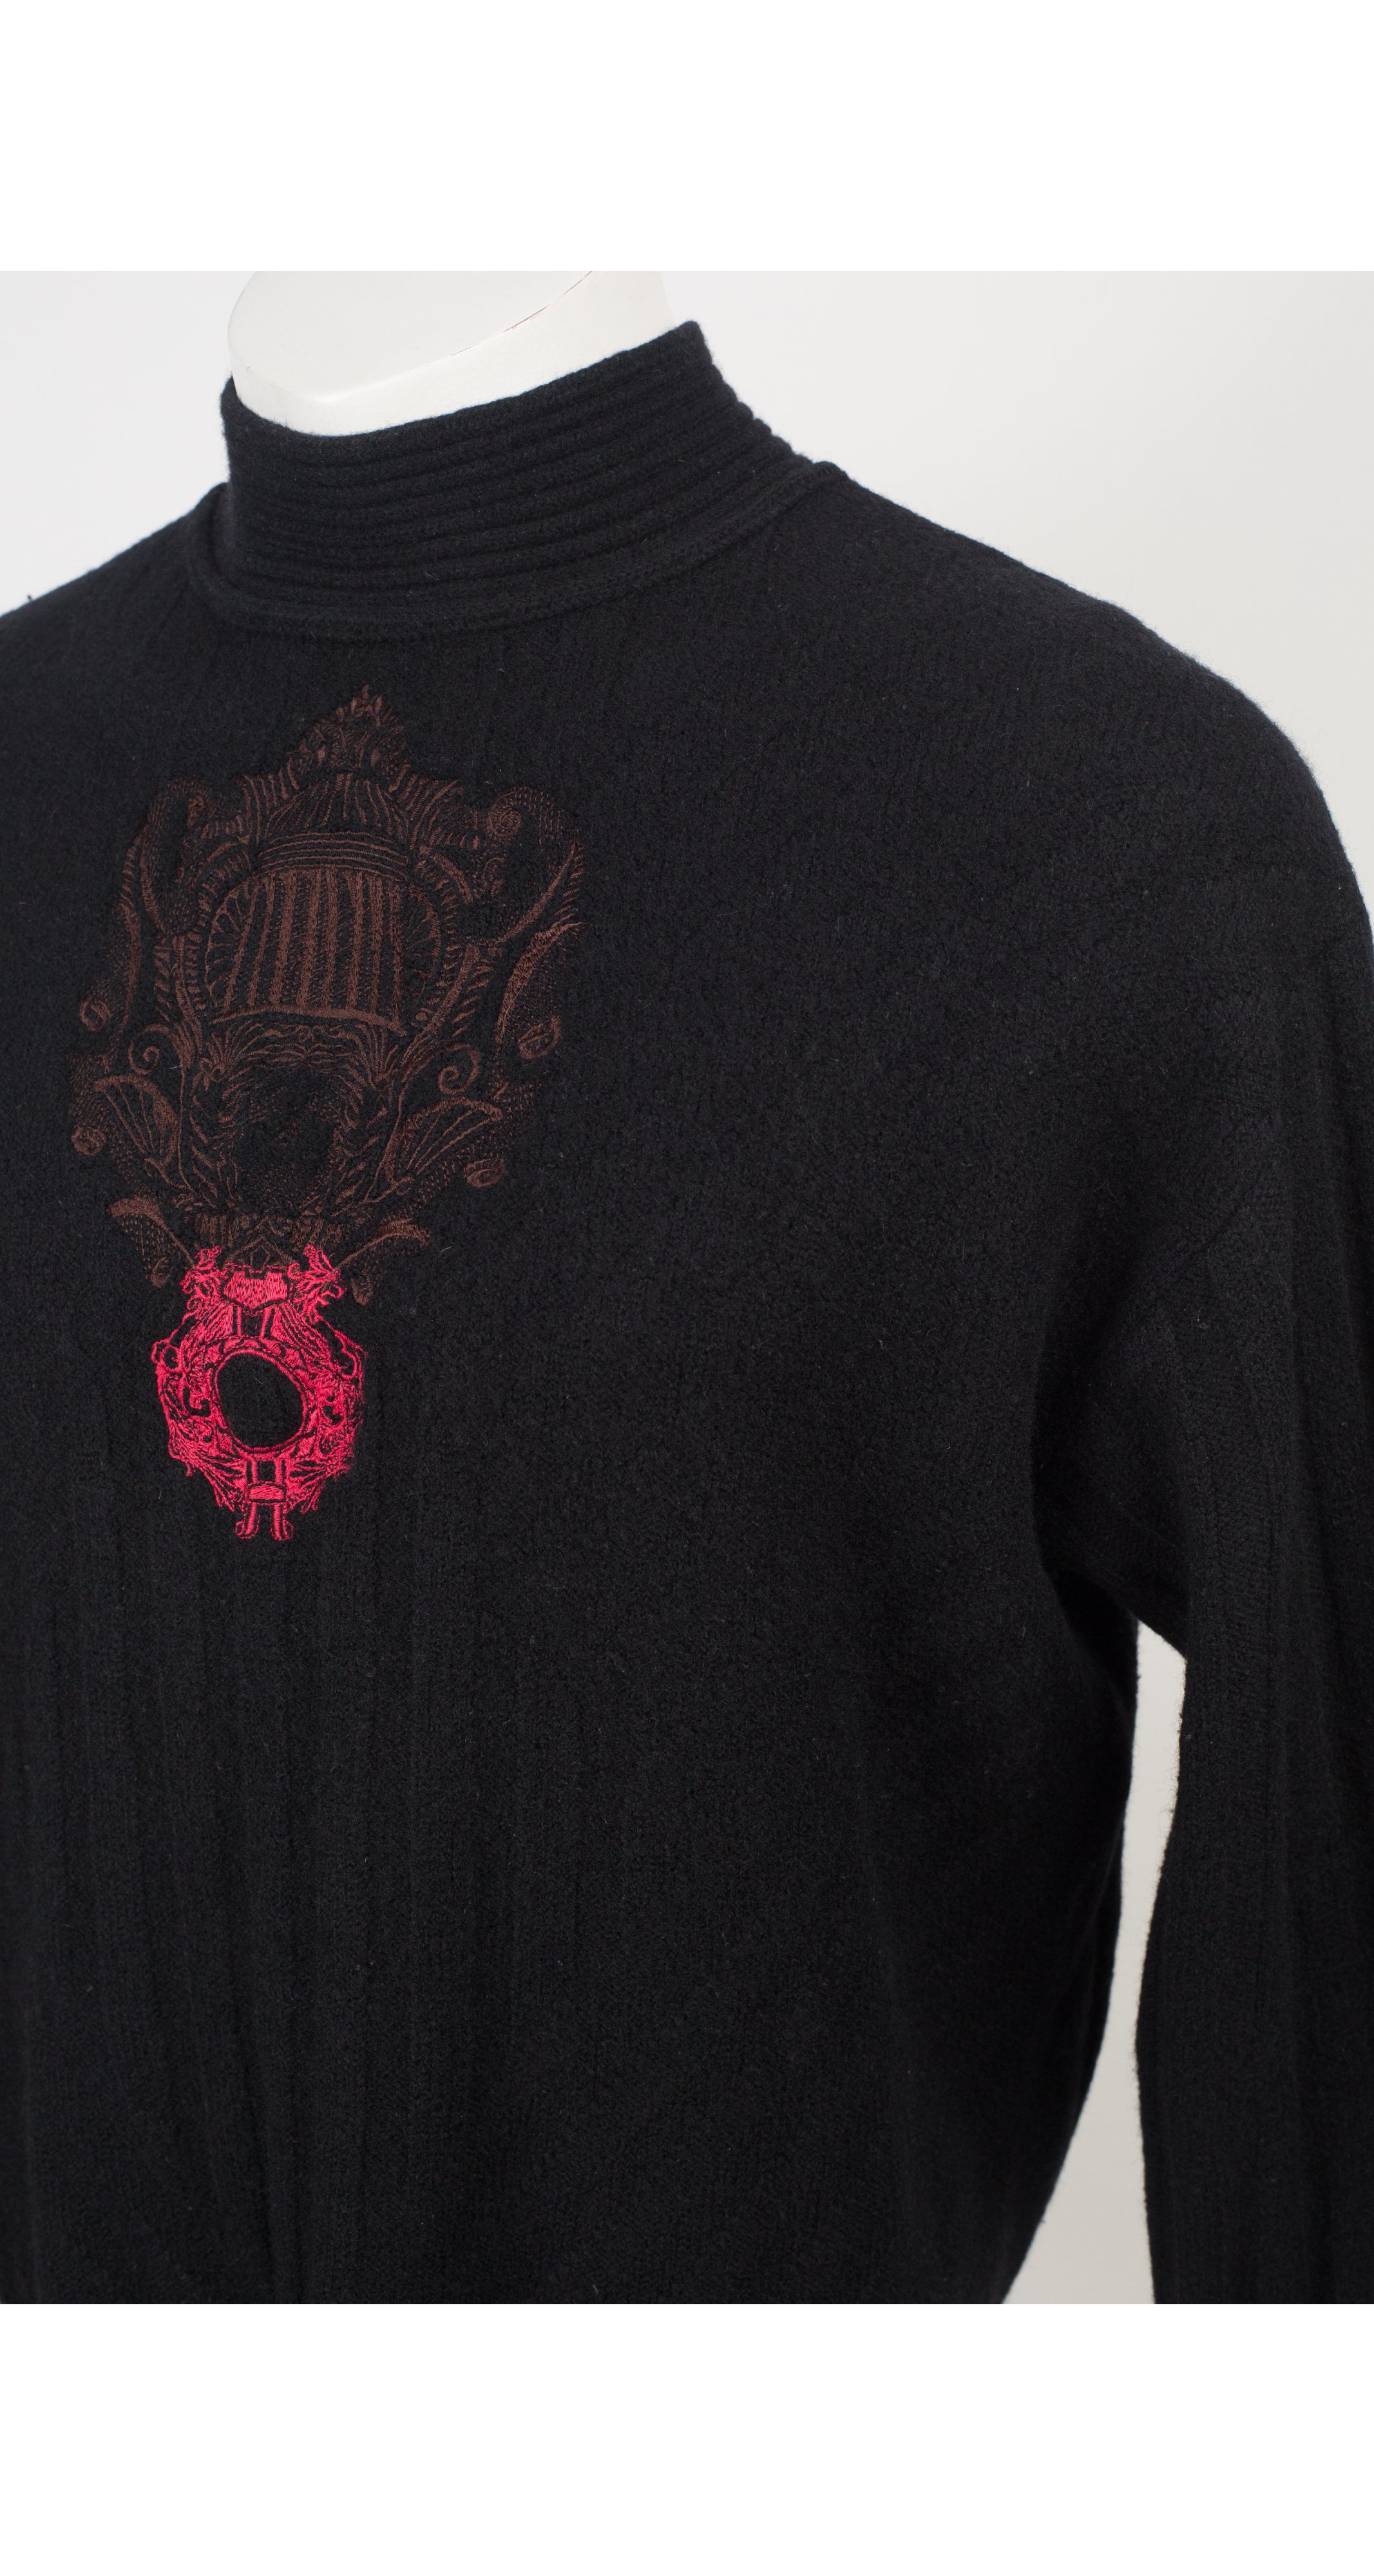 1980s Men's Embroidered Emblem Black Wool Turtleneck Sweater